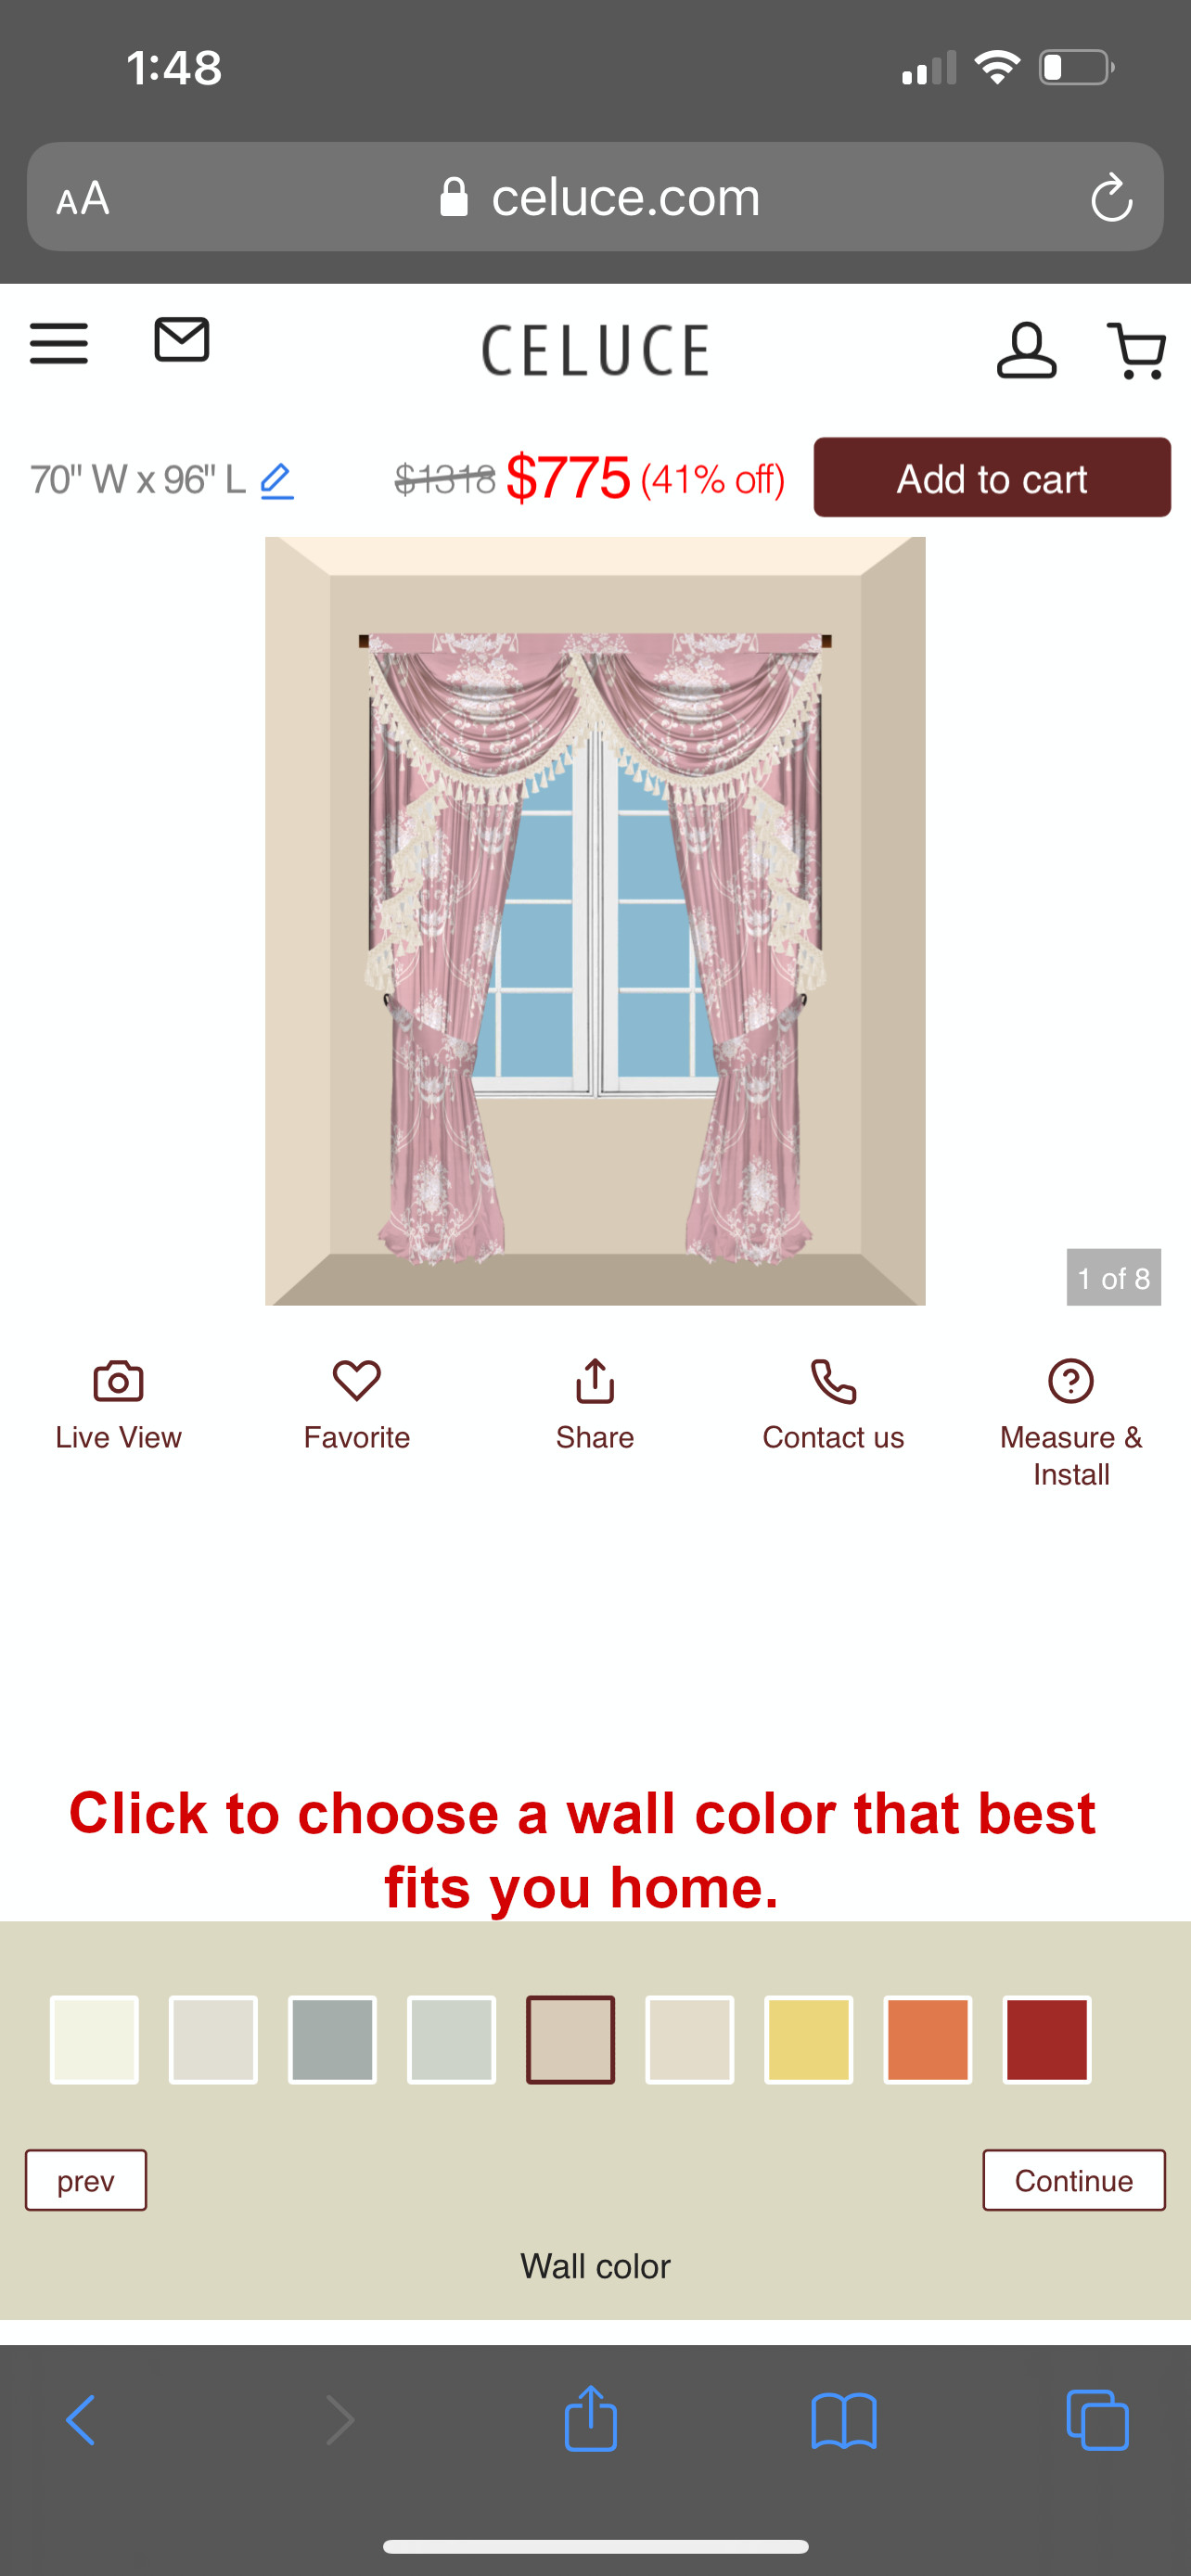 Select wall color - Optional